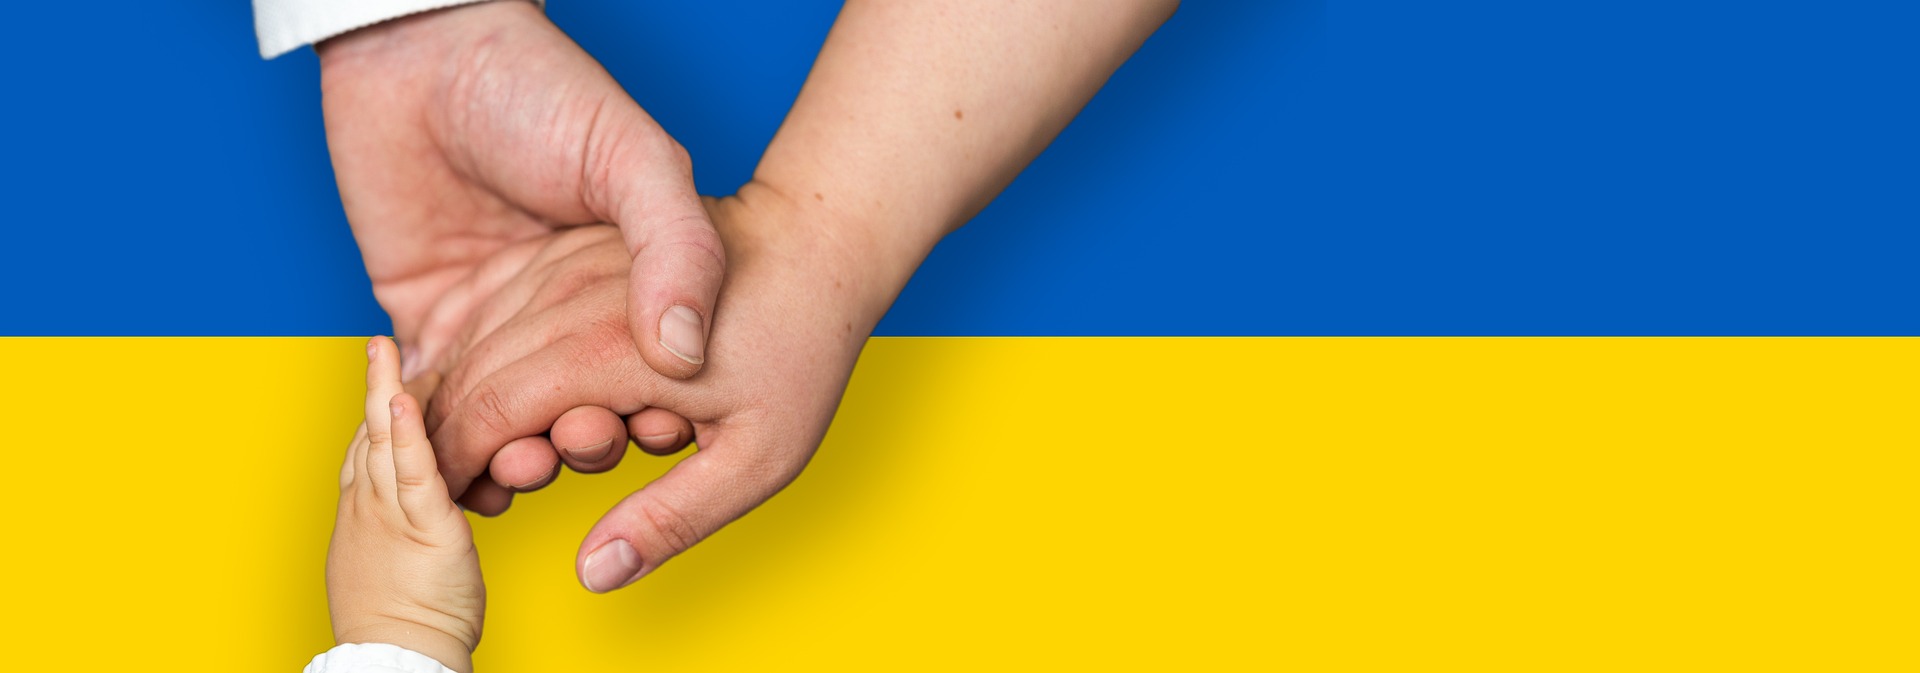 Ukrainan lippu, vaakasuorat väripalkit, ylhäällä sininen ja alhaalla keltainen väripalkki. Vaakamuotoisten väripalkkien päällä on kolmen eri ikäisen ihmisen kädet, sormet ovat yhdessä keskenään.